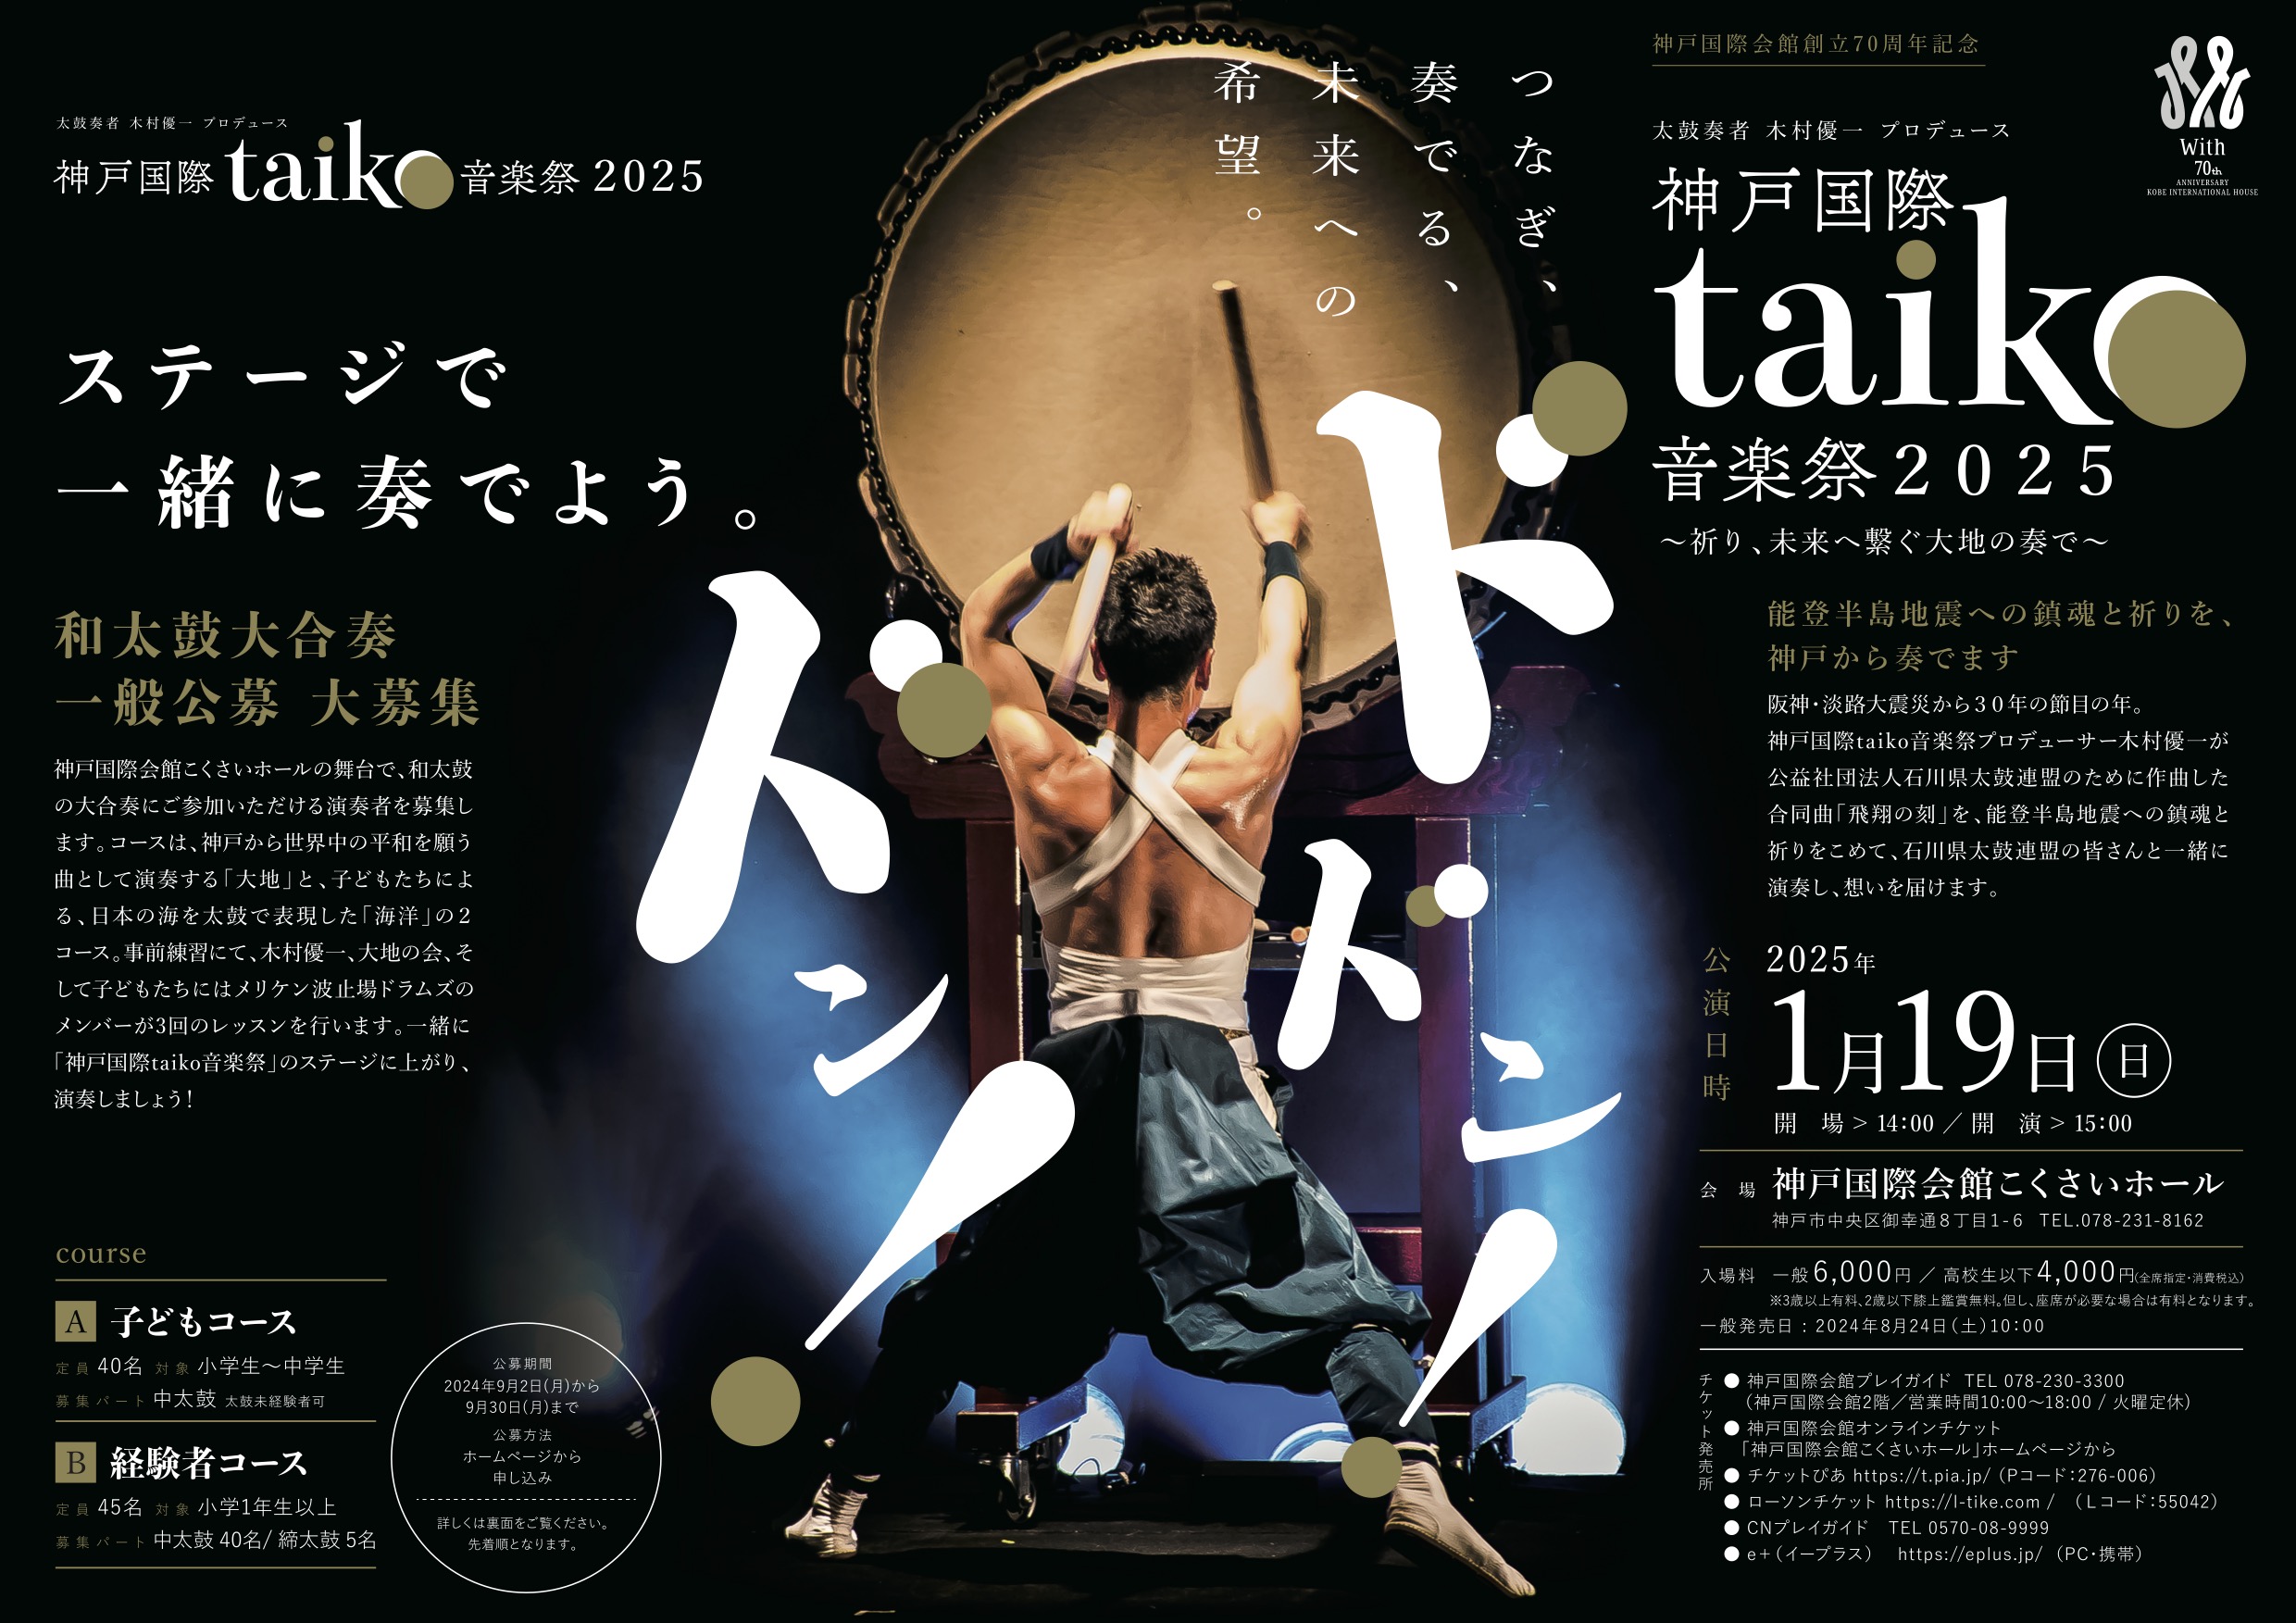 太鼓奏者 木村優一プロデュース 神戸国際taiko音楽祭2025 〜祈り、未来へ繋ぐ大地の奏で～